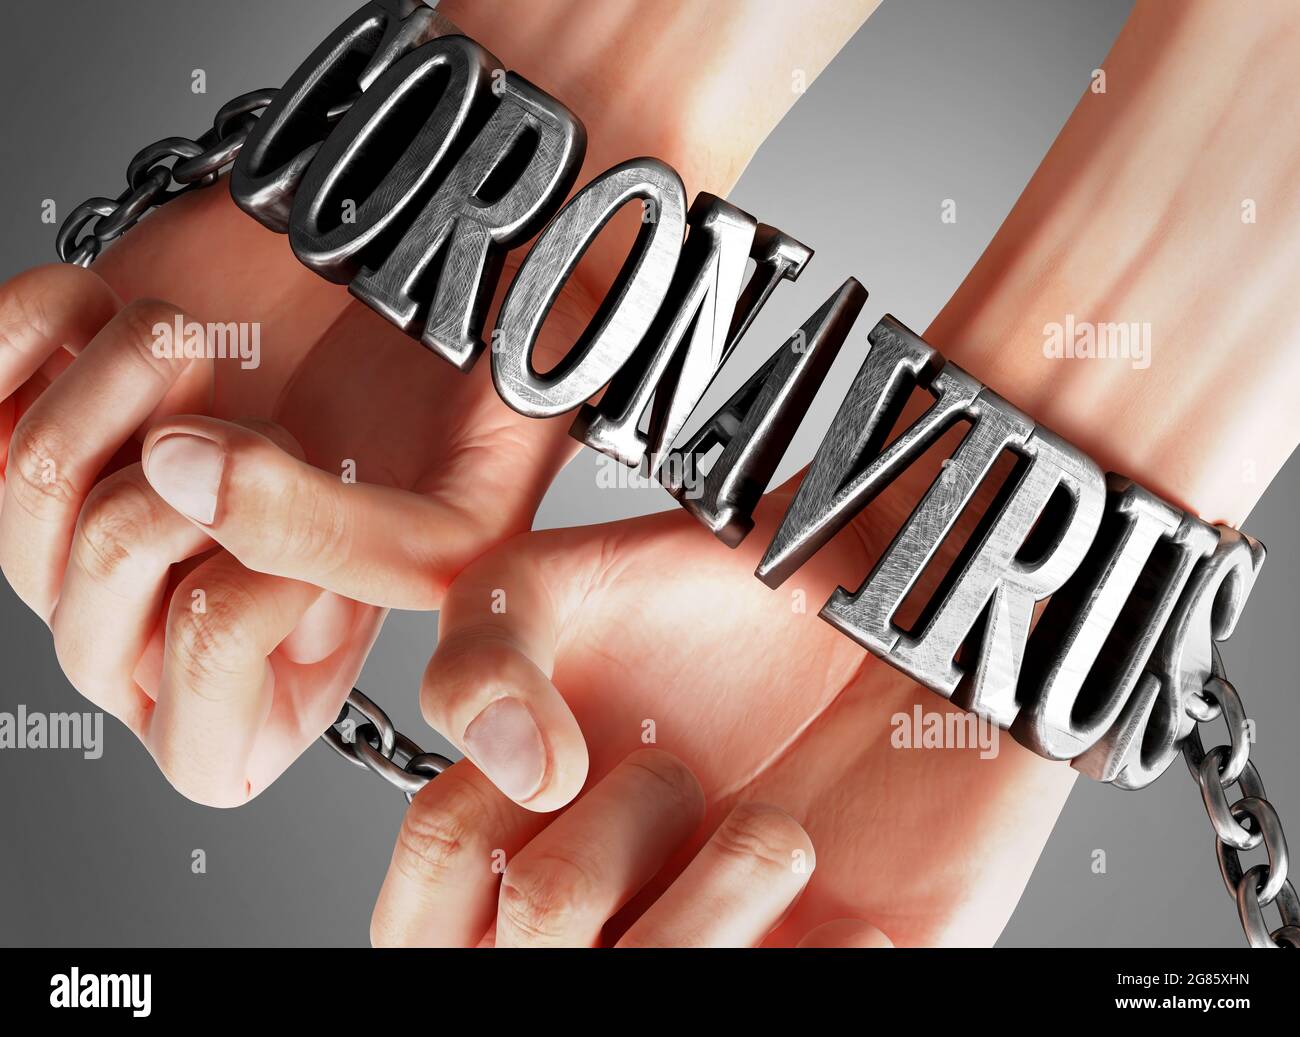 Coronavirus schränkt Leben und Freiheit ein und bringt Versklavung, Schmerz und Elend in das menschliche Leben - symbolisiert durch Ketten und Fesseln aus dem Metallwort C Stockfoto